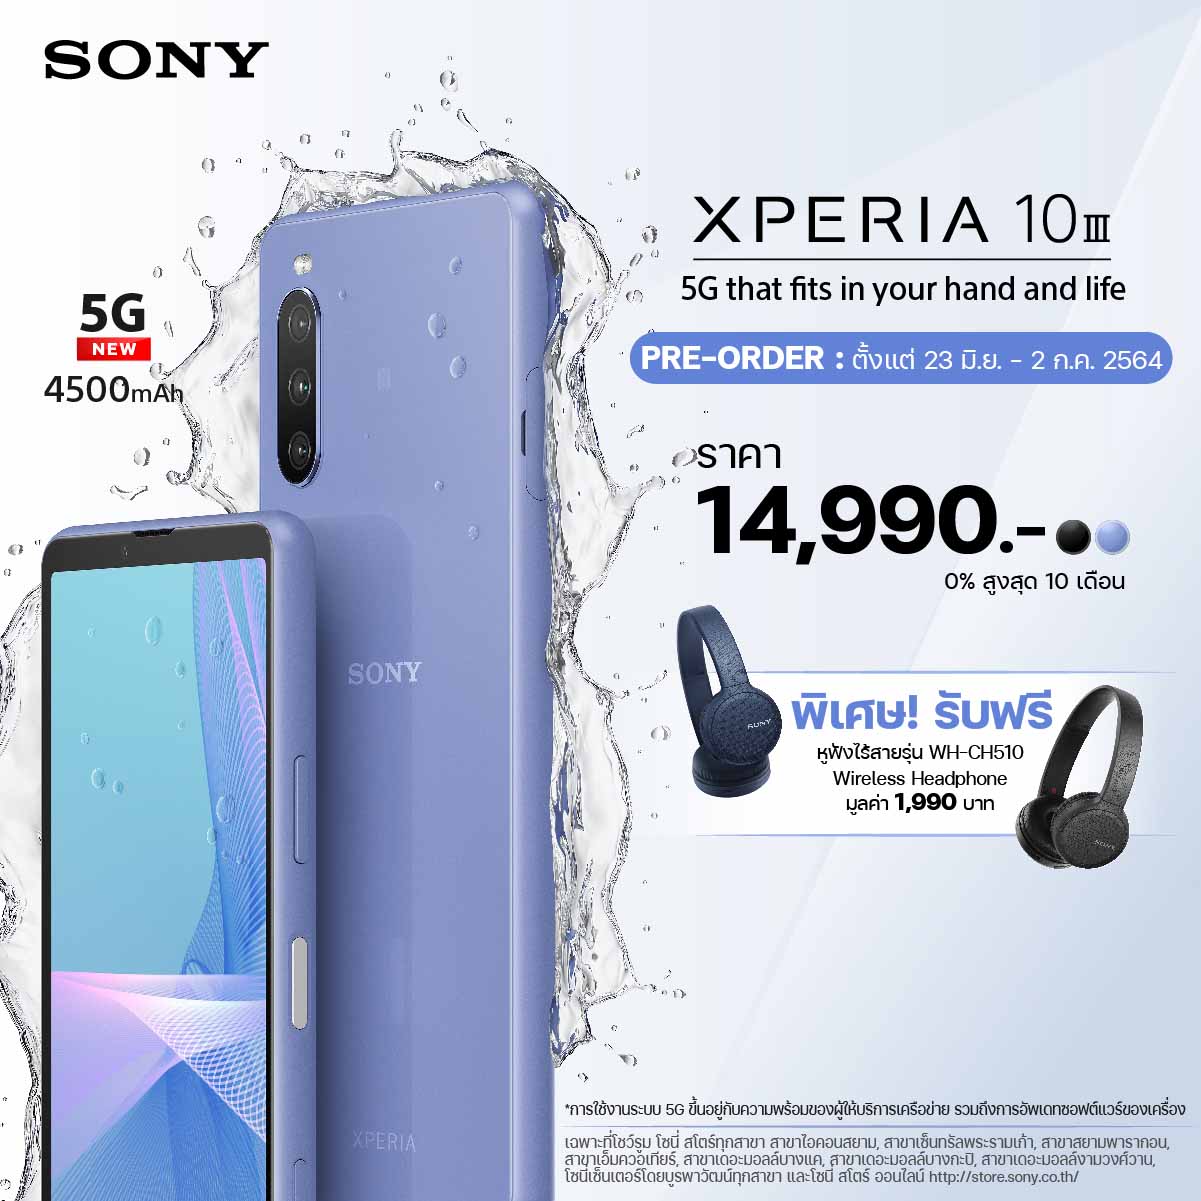 โซนี่ไทยเปิดตัว Xperia 10 III สมาร์ทโฟนระดับกลาง มาพร้อมแบตเตอรี่ที่อึดกว่าเดิม และรองรับ 5G 1